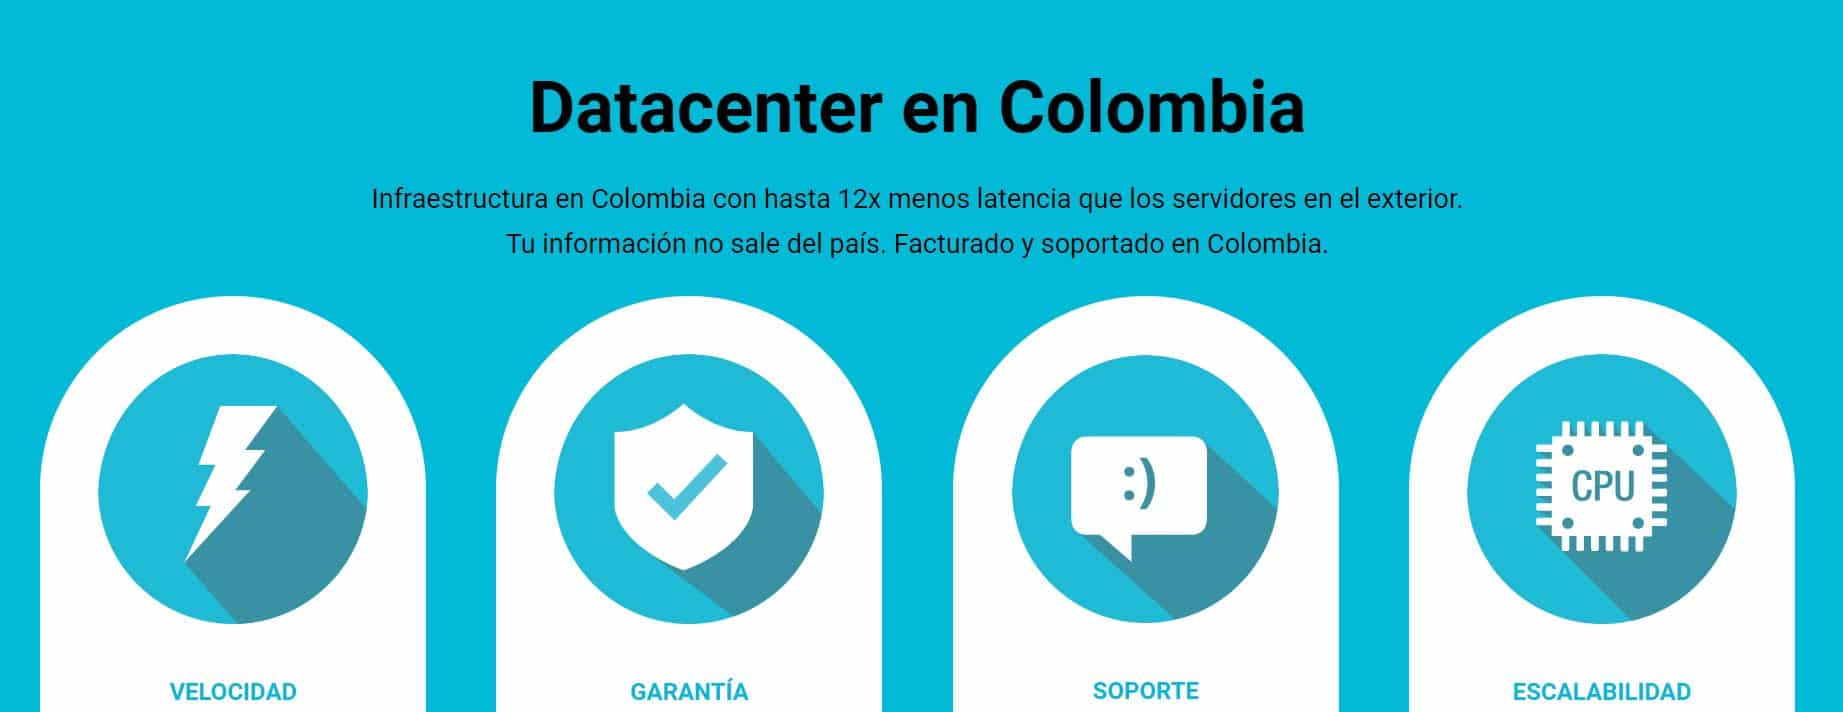 Los servicios de los hosting Colombia son variados en función del plan que adquieras.